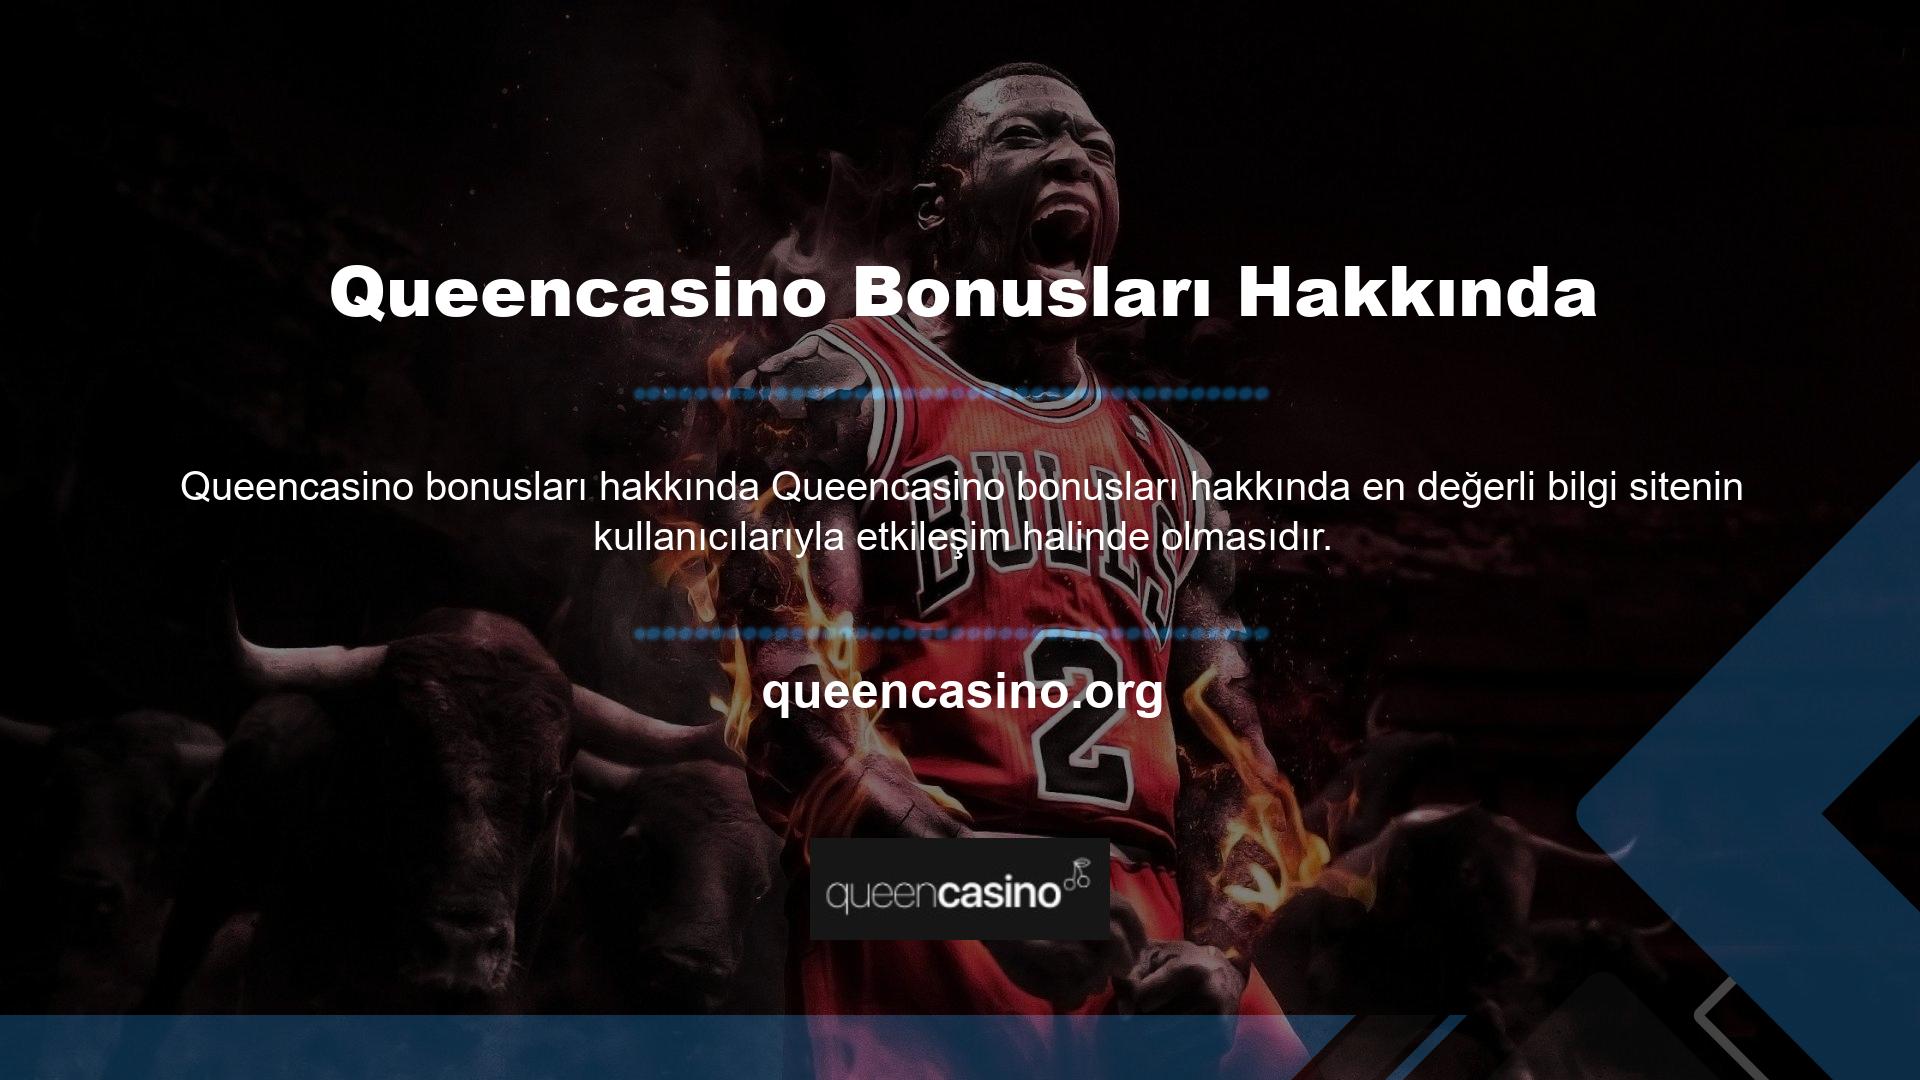 Queencasino casino bonusunun yanı sıra ön plana çıkan ve onay puanı yüksek olan spor bahisleri bonusu da kullanıcıların ilgisini çekmekte ve tanıtımı yapılmaktadır